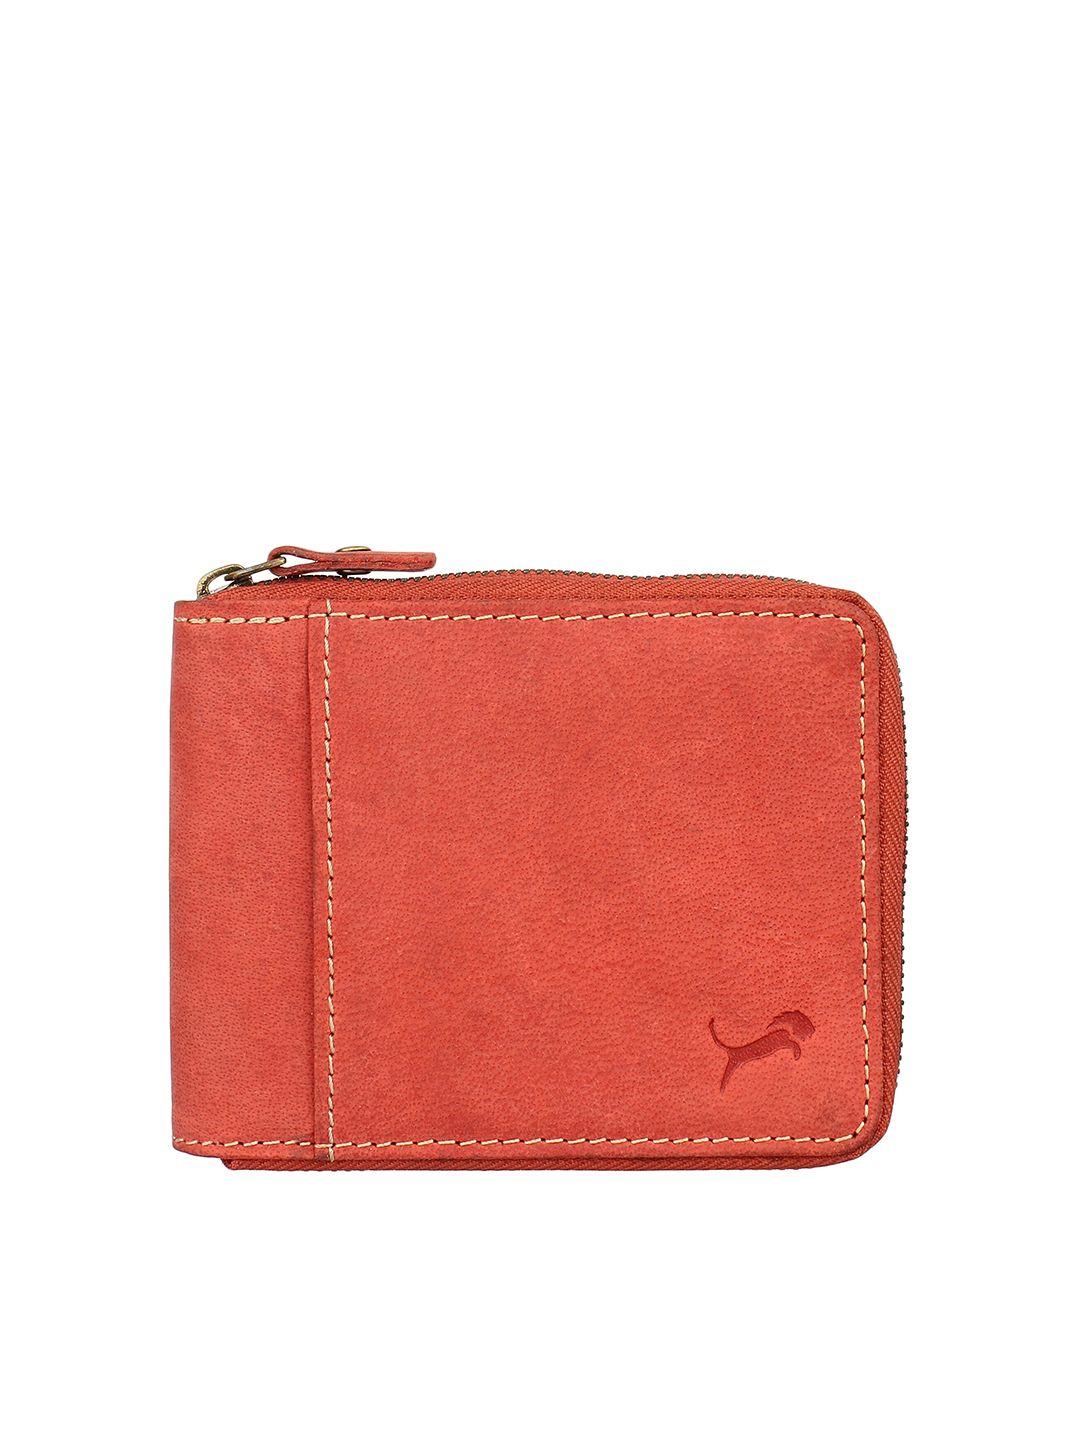 wild edge men red leather zip around wallet